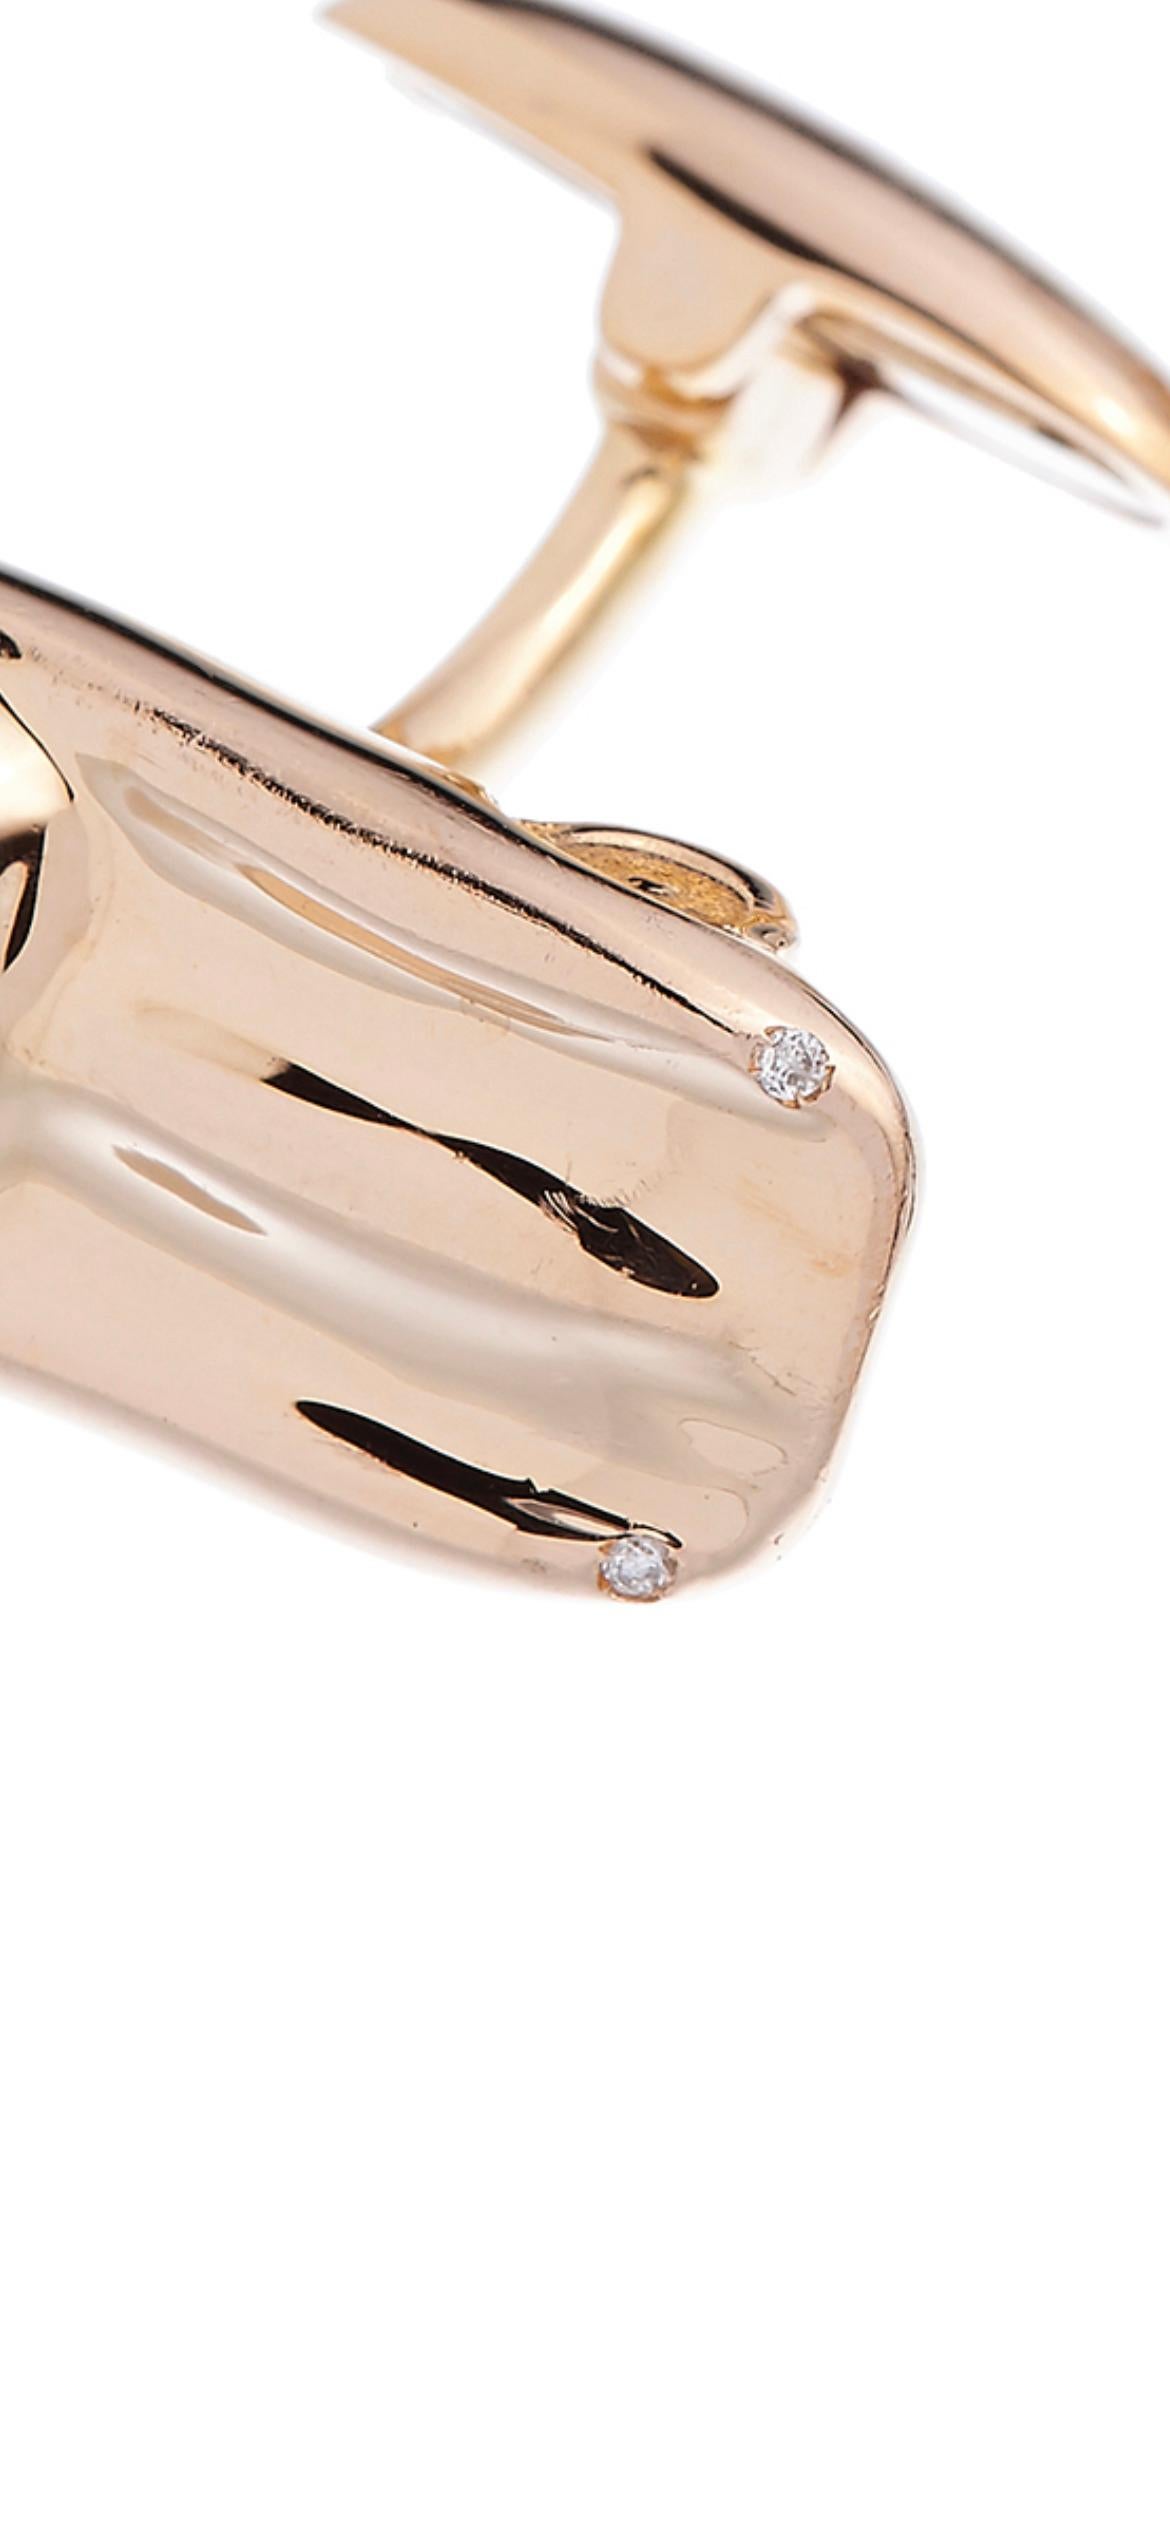 18K Rose White Gold Diamanten Made in Italy Jaguar E Type Cosmic Design Manschettenknöpfe.
Die Manschettenknöpfe Jaguar E Type sind aus 18 Karat Rosé- und Weißgold gefertigt und mit 4 Diamanten, Farbe F, Vvs, Gesamtgewicht 0,02 Karat, besetzt. Schon